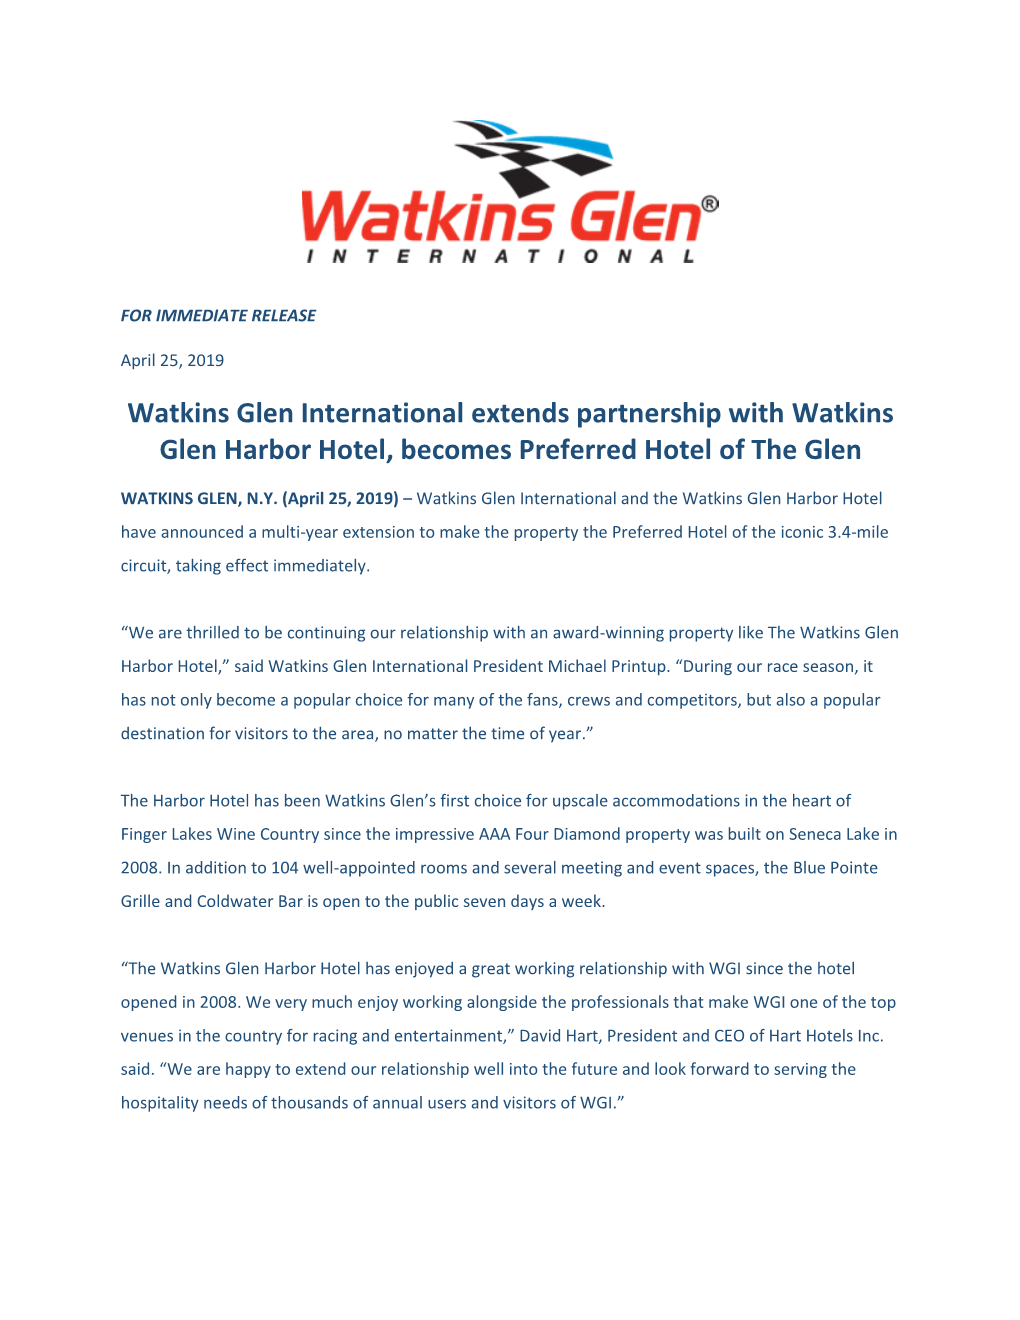 Watkins Glen International Press Release